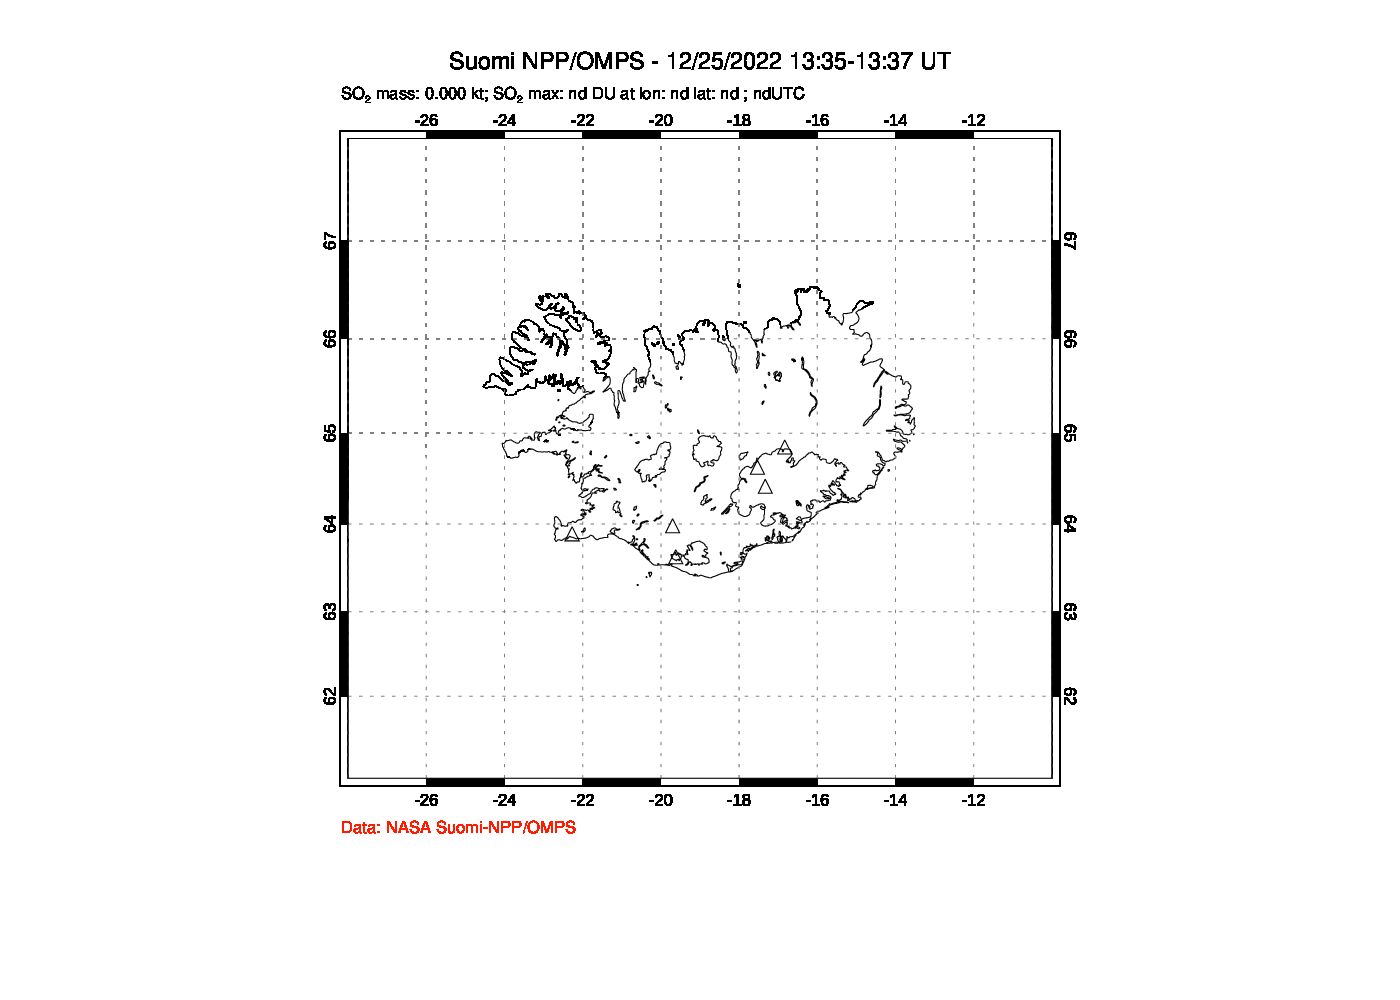 A sulfur dioxide image over Iceland on Dec 25, 2022.